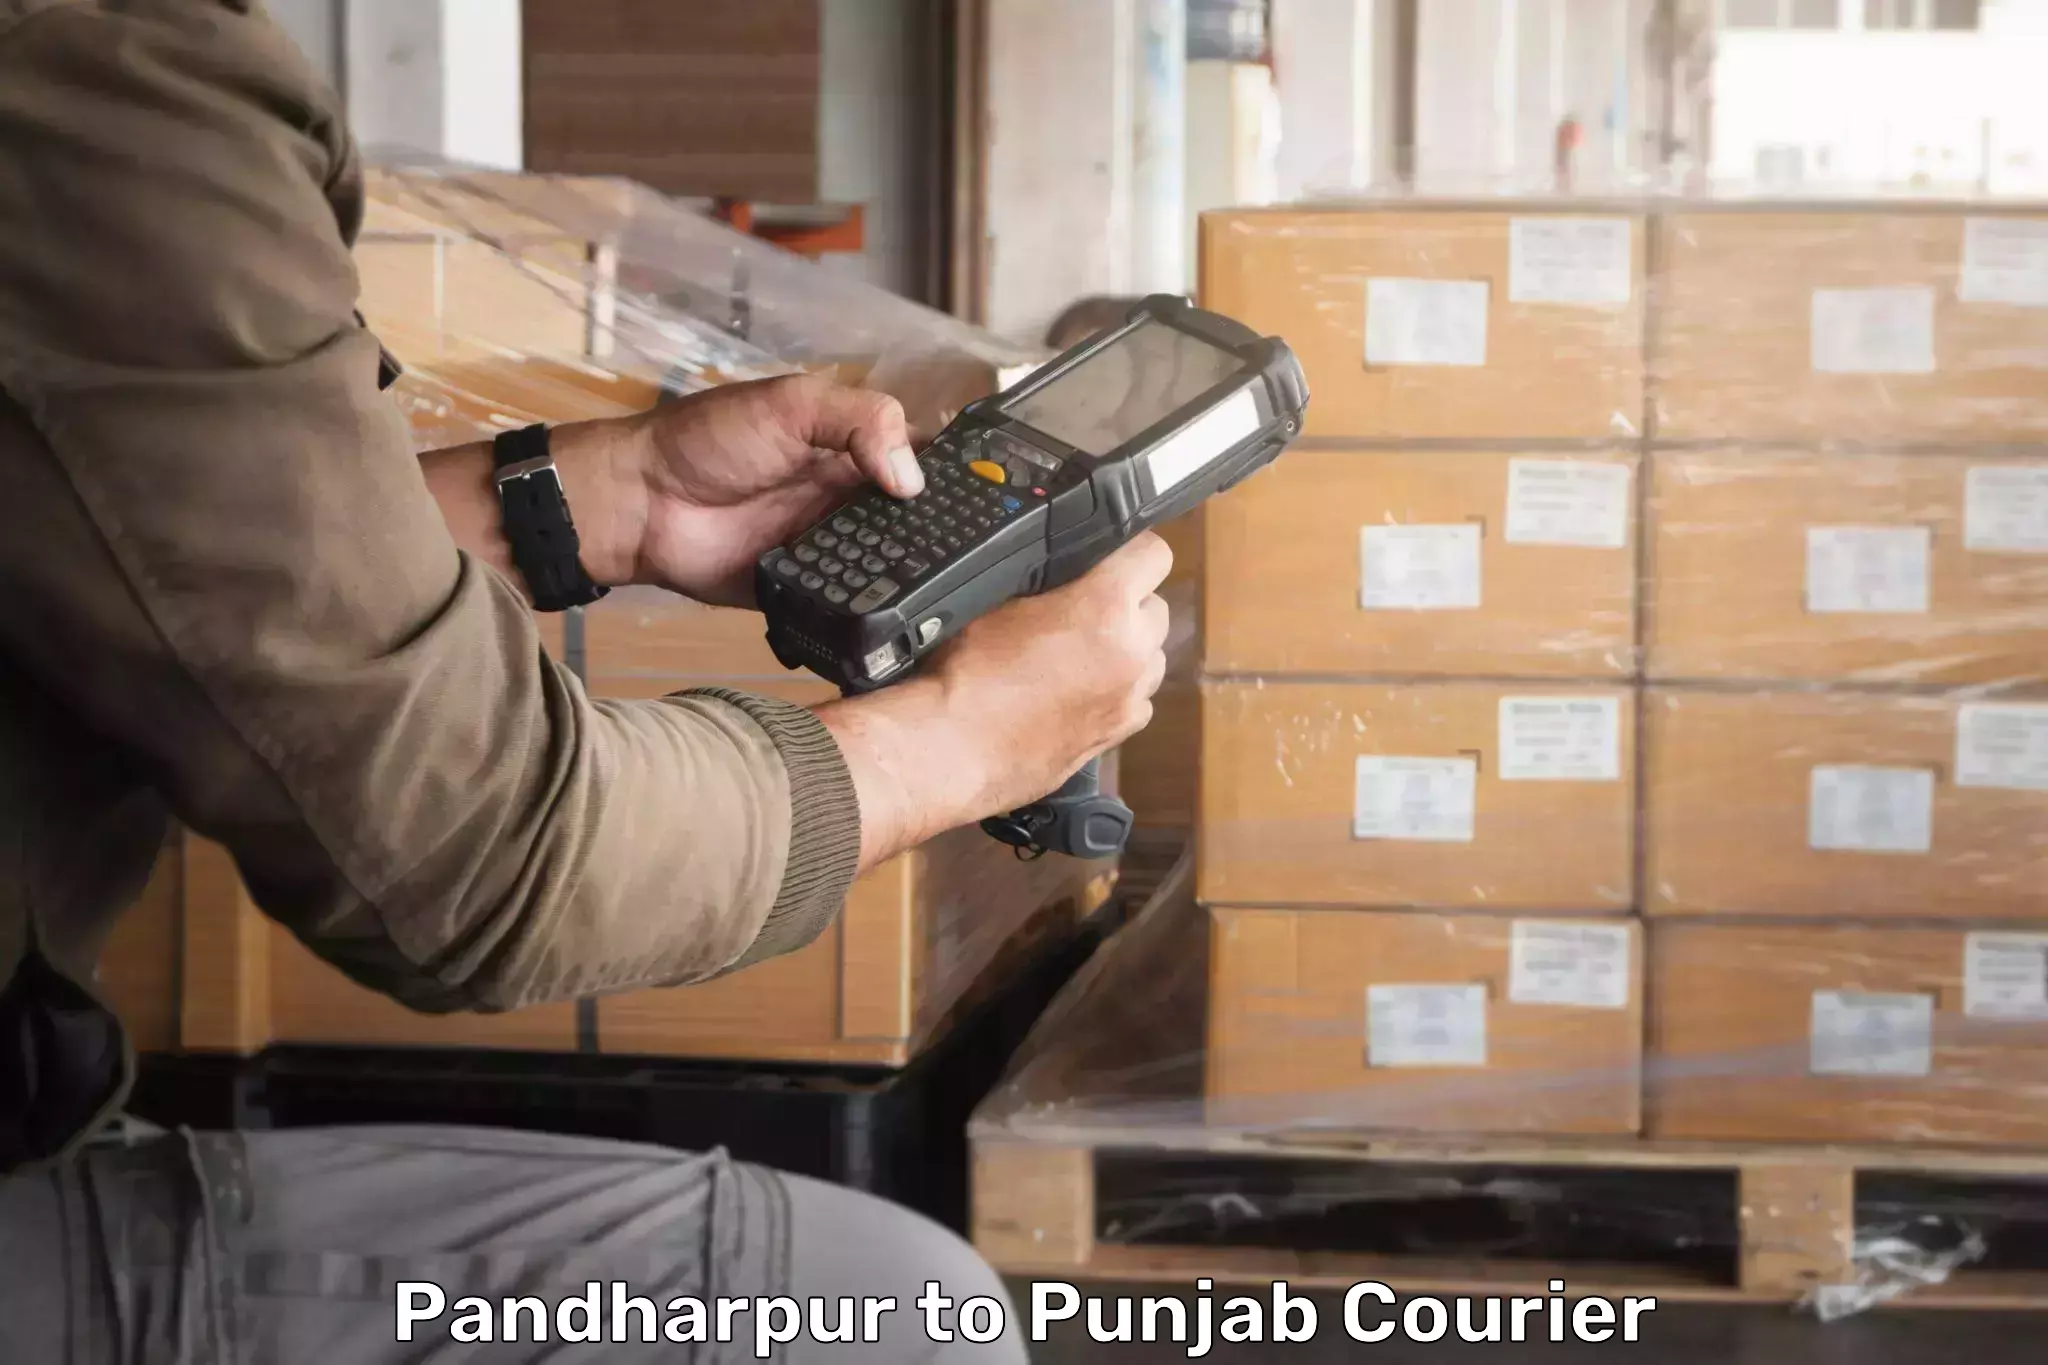 Courier app Pandharpur to Dinanagar